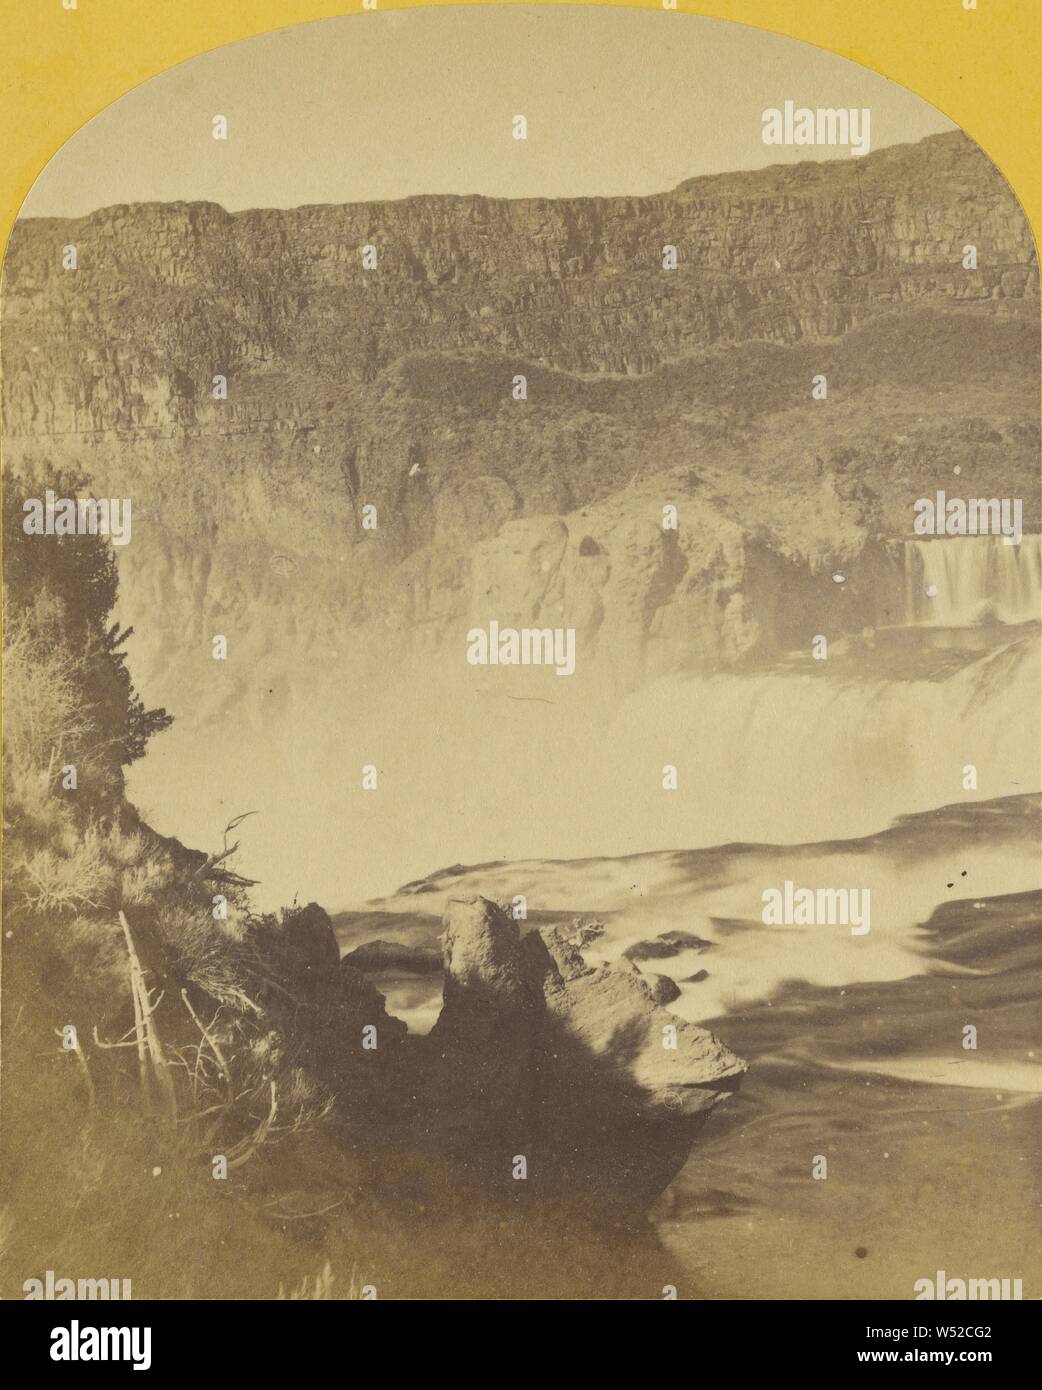 Shoshone Falls, rivière Snake, Oklahoma, chute principale, 210 pieds de haut de niveau inférieur, la largeur de l'automne, 800 pieds de haut pour abaisser..., Timothy H. O'Sullivan (américain, 1840 - 1882), 1874, à l'albumine argentique Banque D'Images